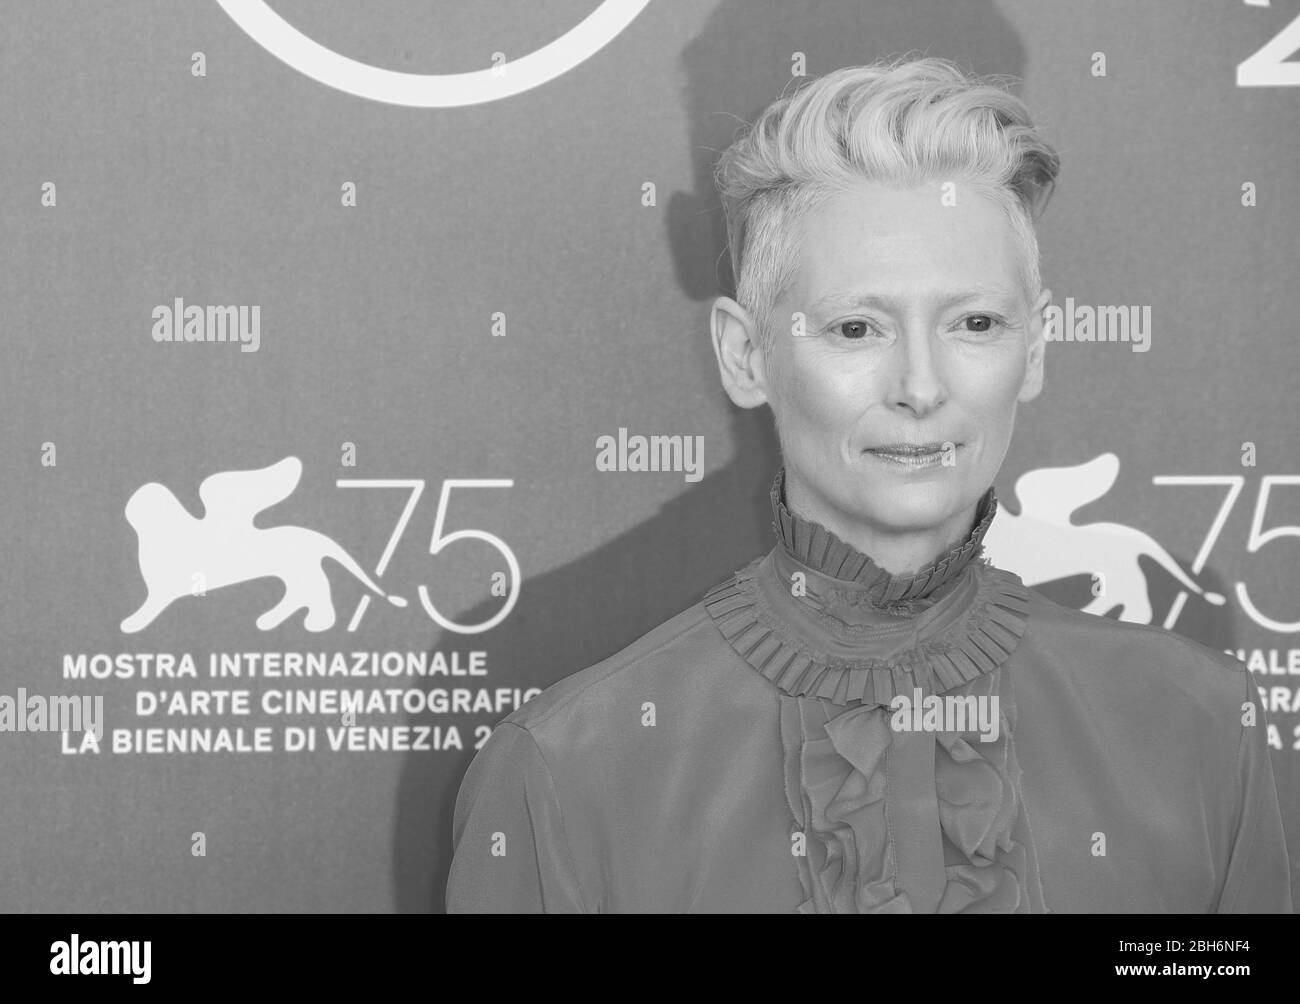 VENEZIA, ITALIA - 01 SETTEMBRE: Tilda Swinton partecipa alla fotocellula "Suspiria" durante il 75° Festival del Cinema di Venezia il 01 settembre 2018 a Venezia Foto Stock